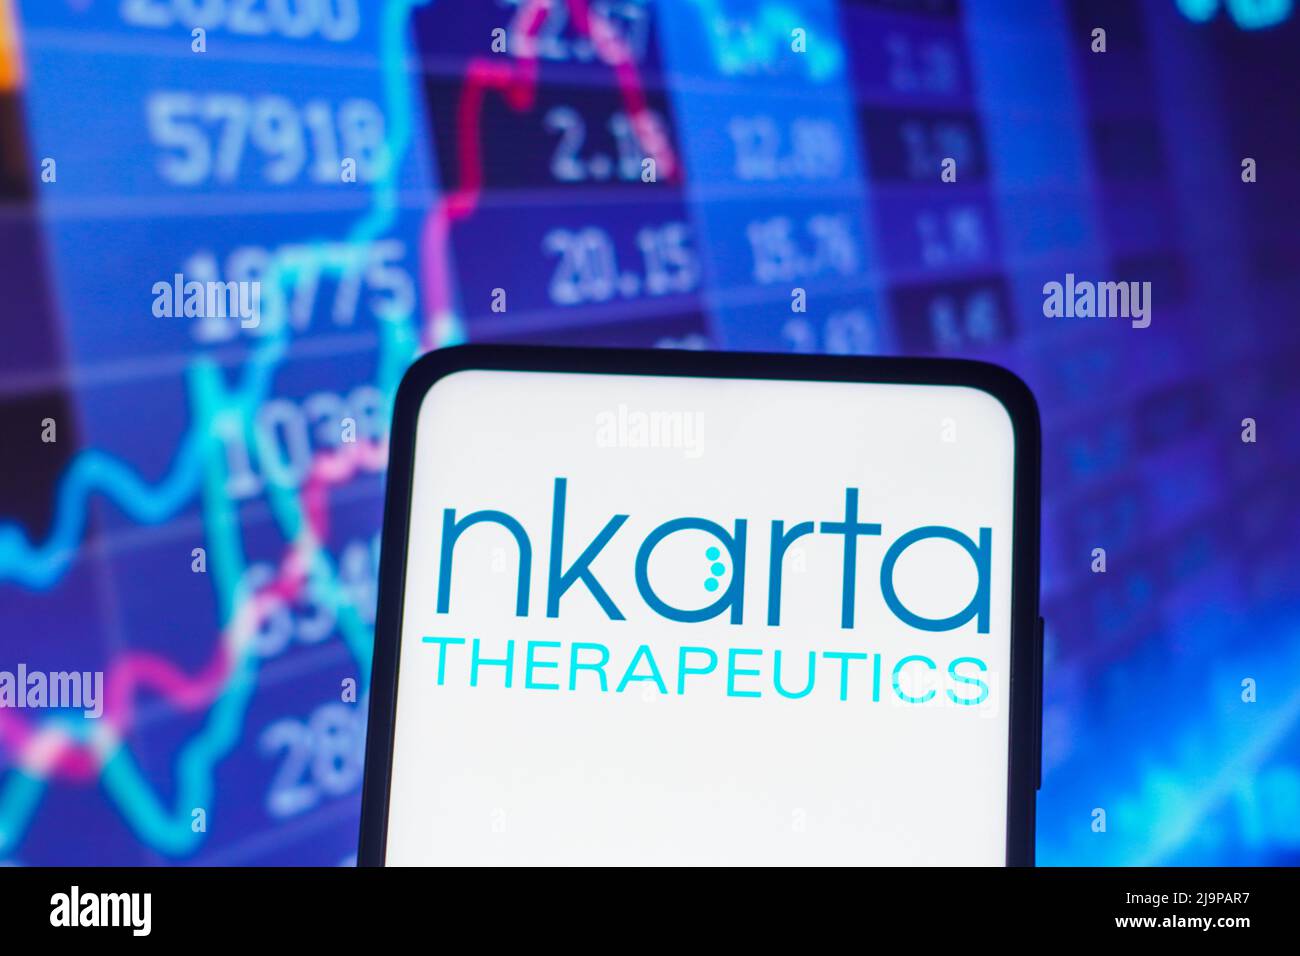 Dans cette illustration, le logo Nkarta Therapeutics s'affiche sur l'écran d'un smartphone. Banque D'Images